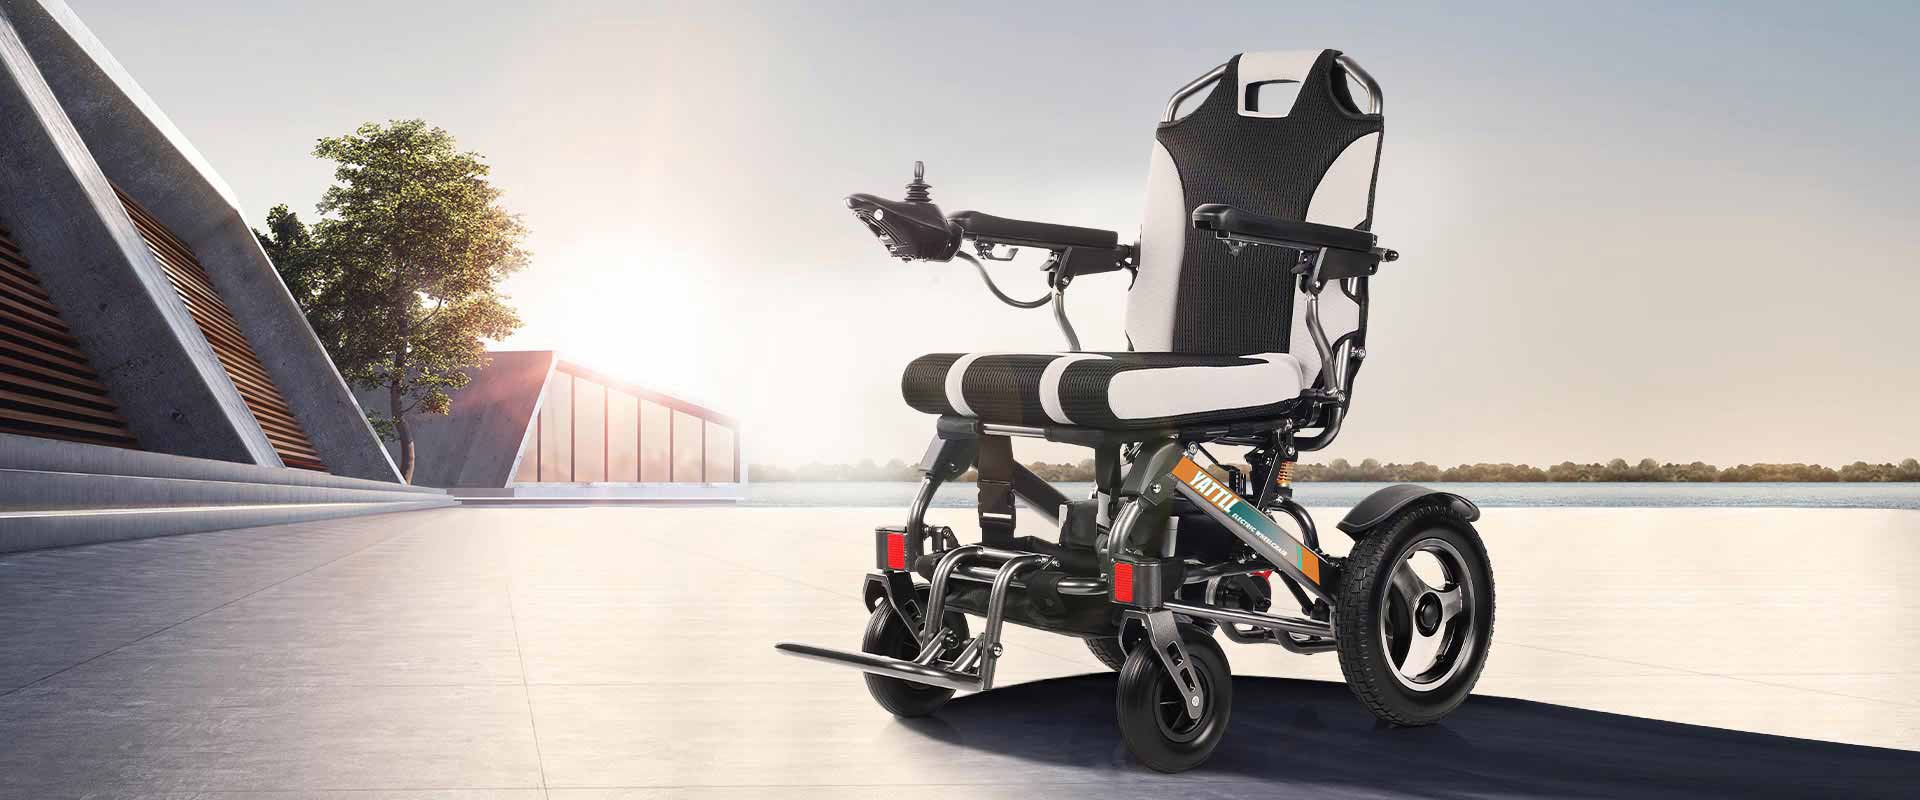 Moc dla osób poruszających się na wózkach inwalidzkich Model: wielbłąd nadzieję, że YE246